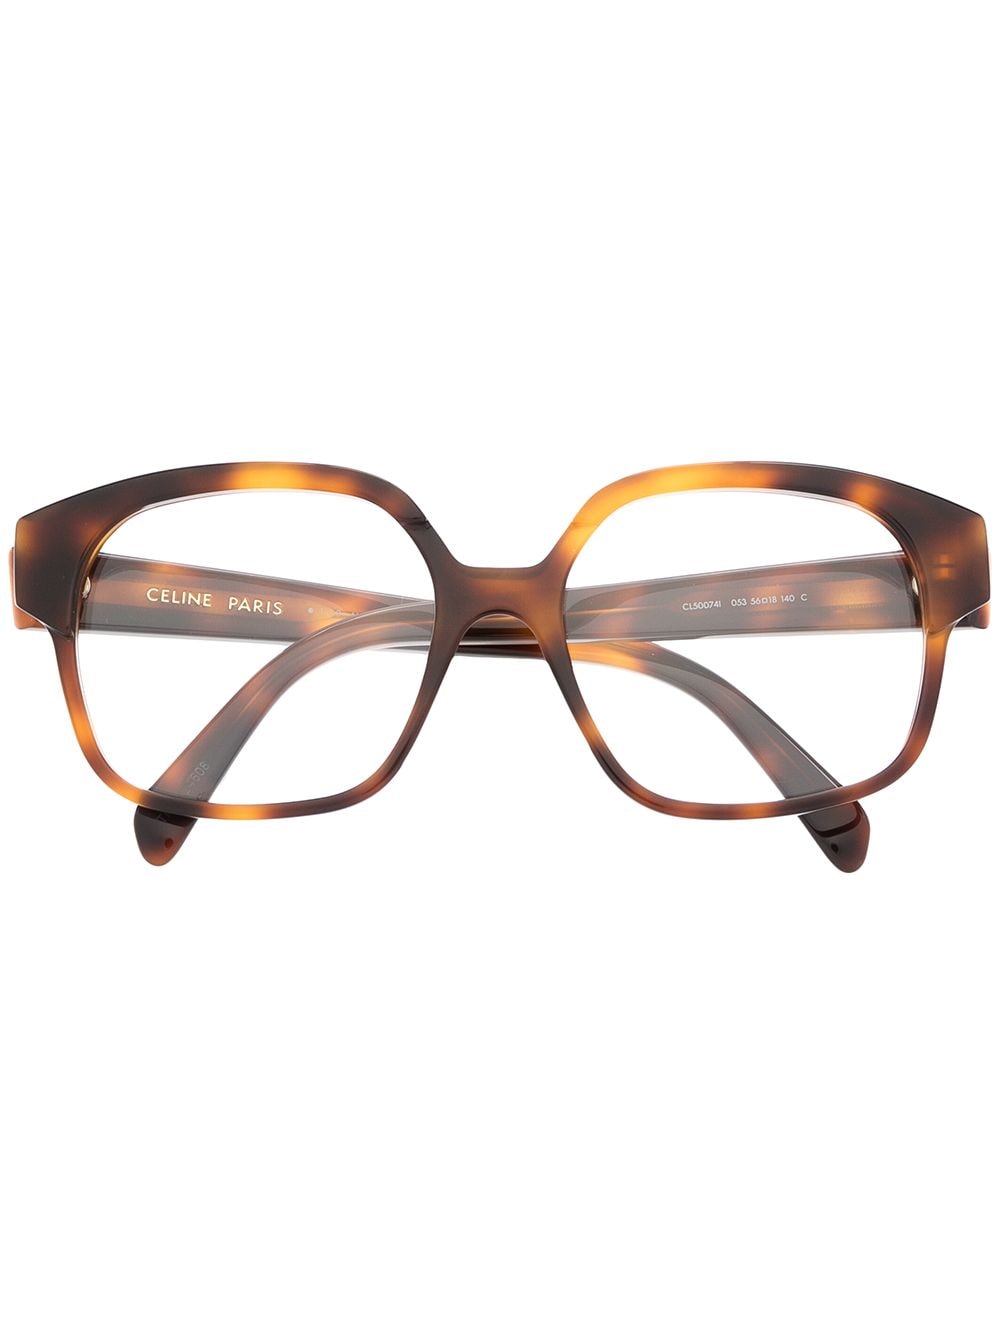 фото Celine eyewear очки в оправе черепаховой расцветки